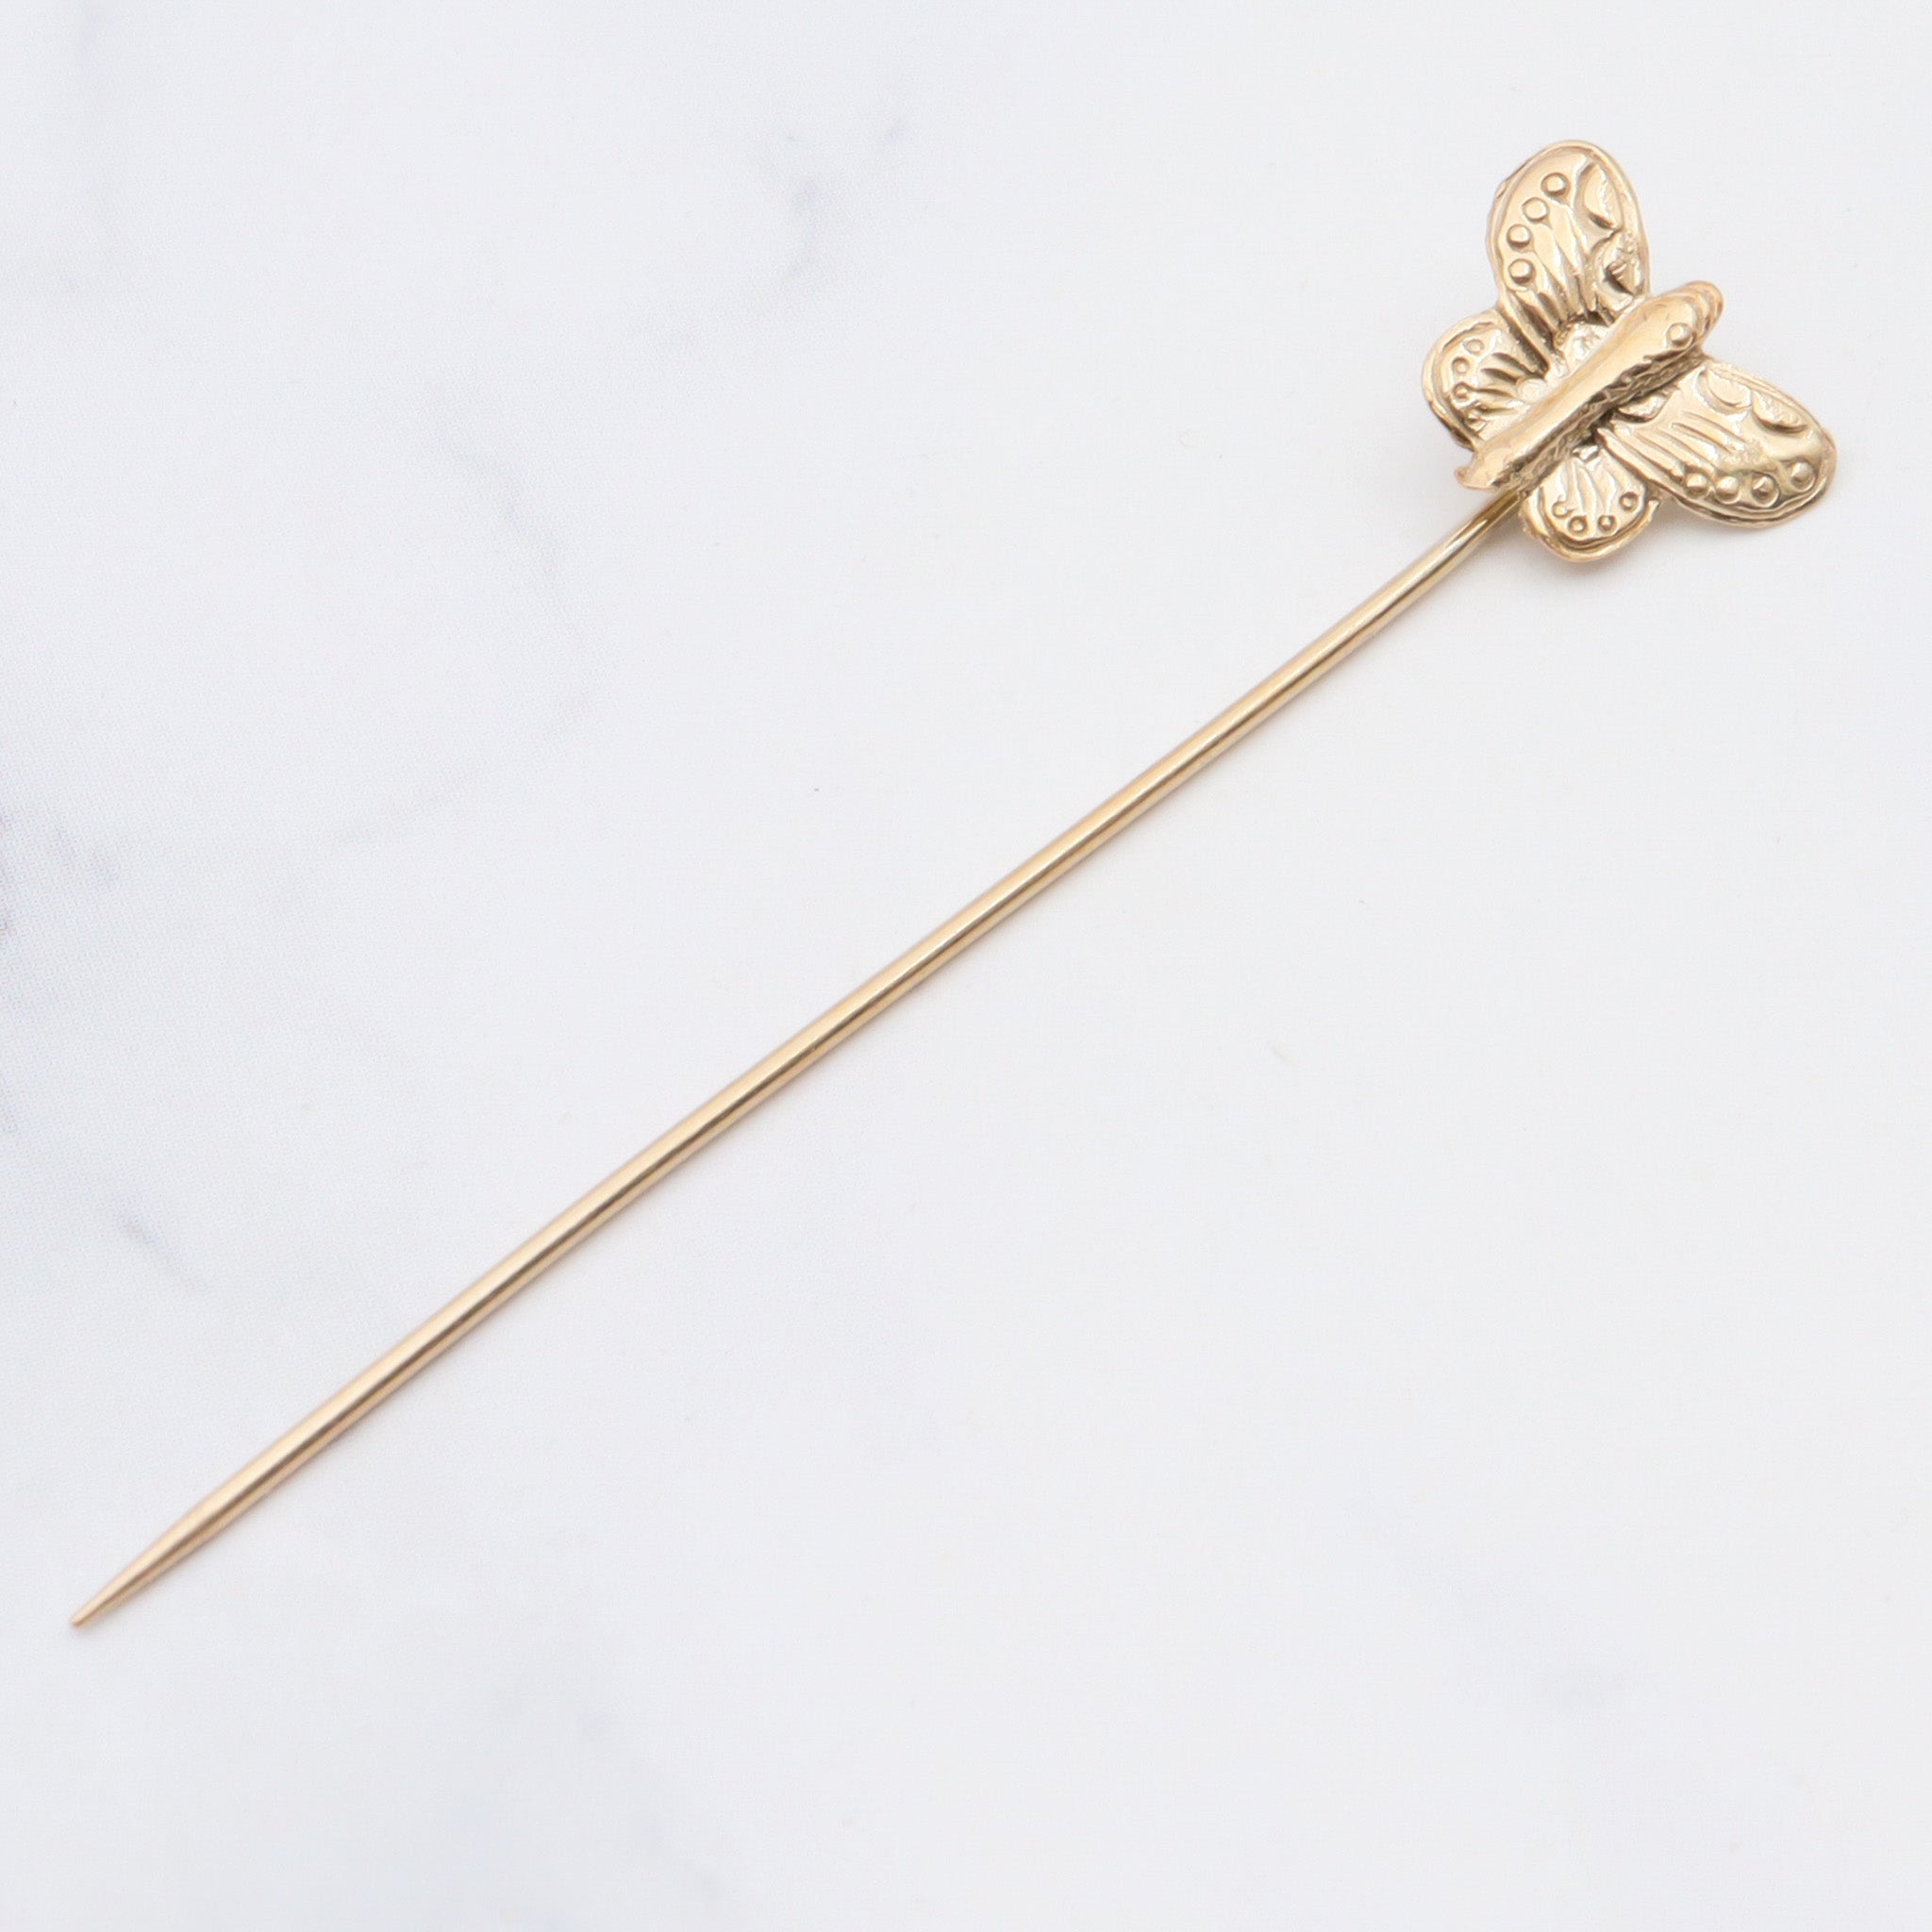 Vintage 14k gold butterfly stick pin